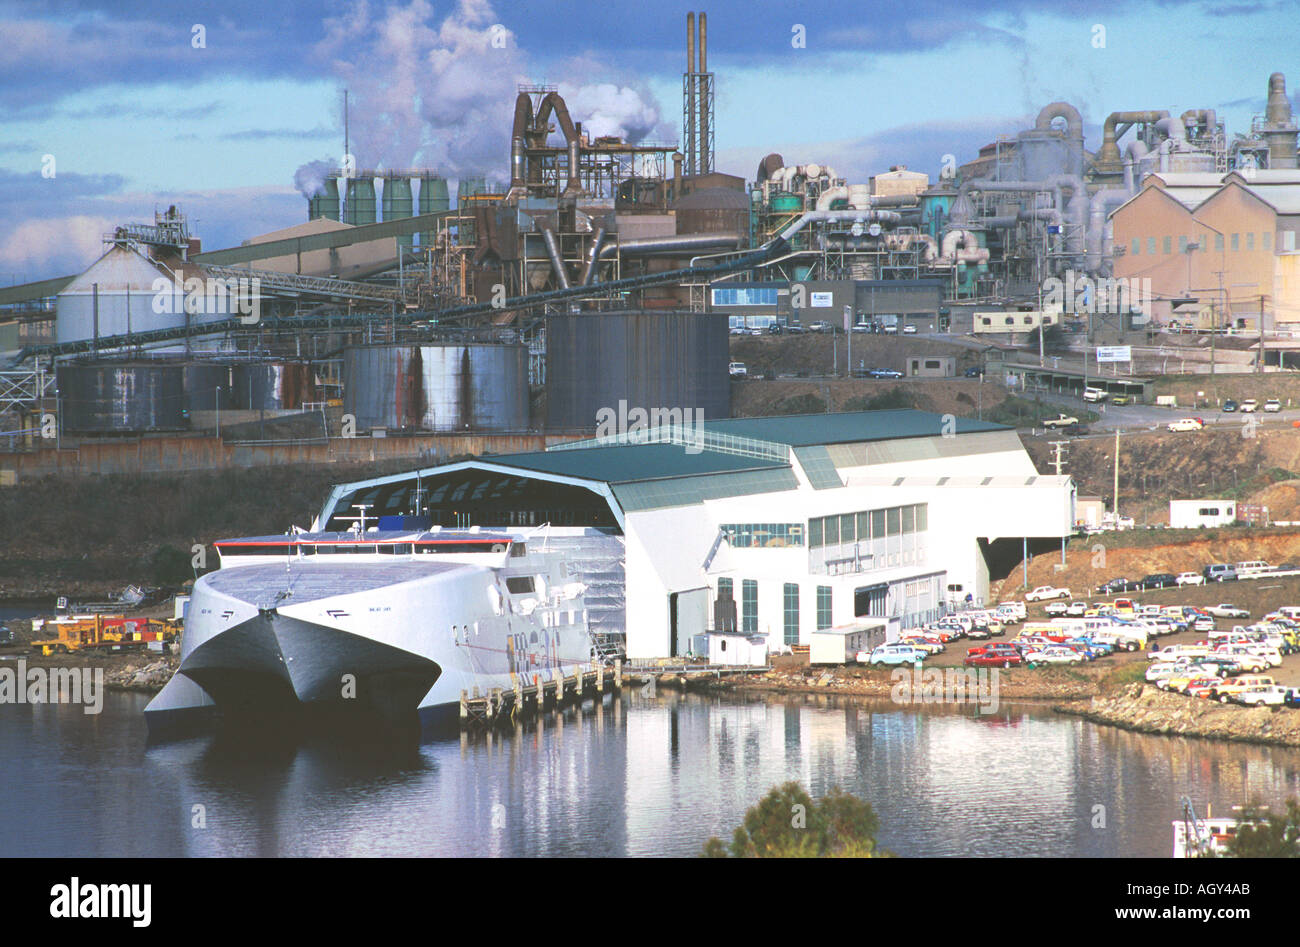 Ein Hochgeschwindigkeits-Katamaran gebaut von internationalen Katamarane auf der Werft in Hobart Tasmanien Australien Stockfoto